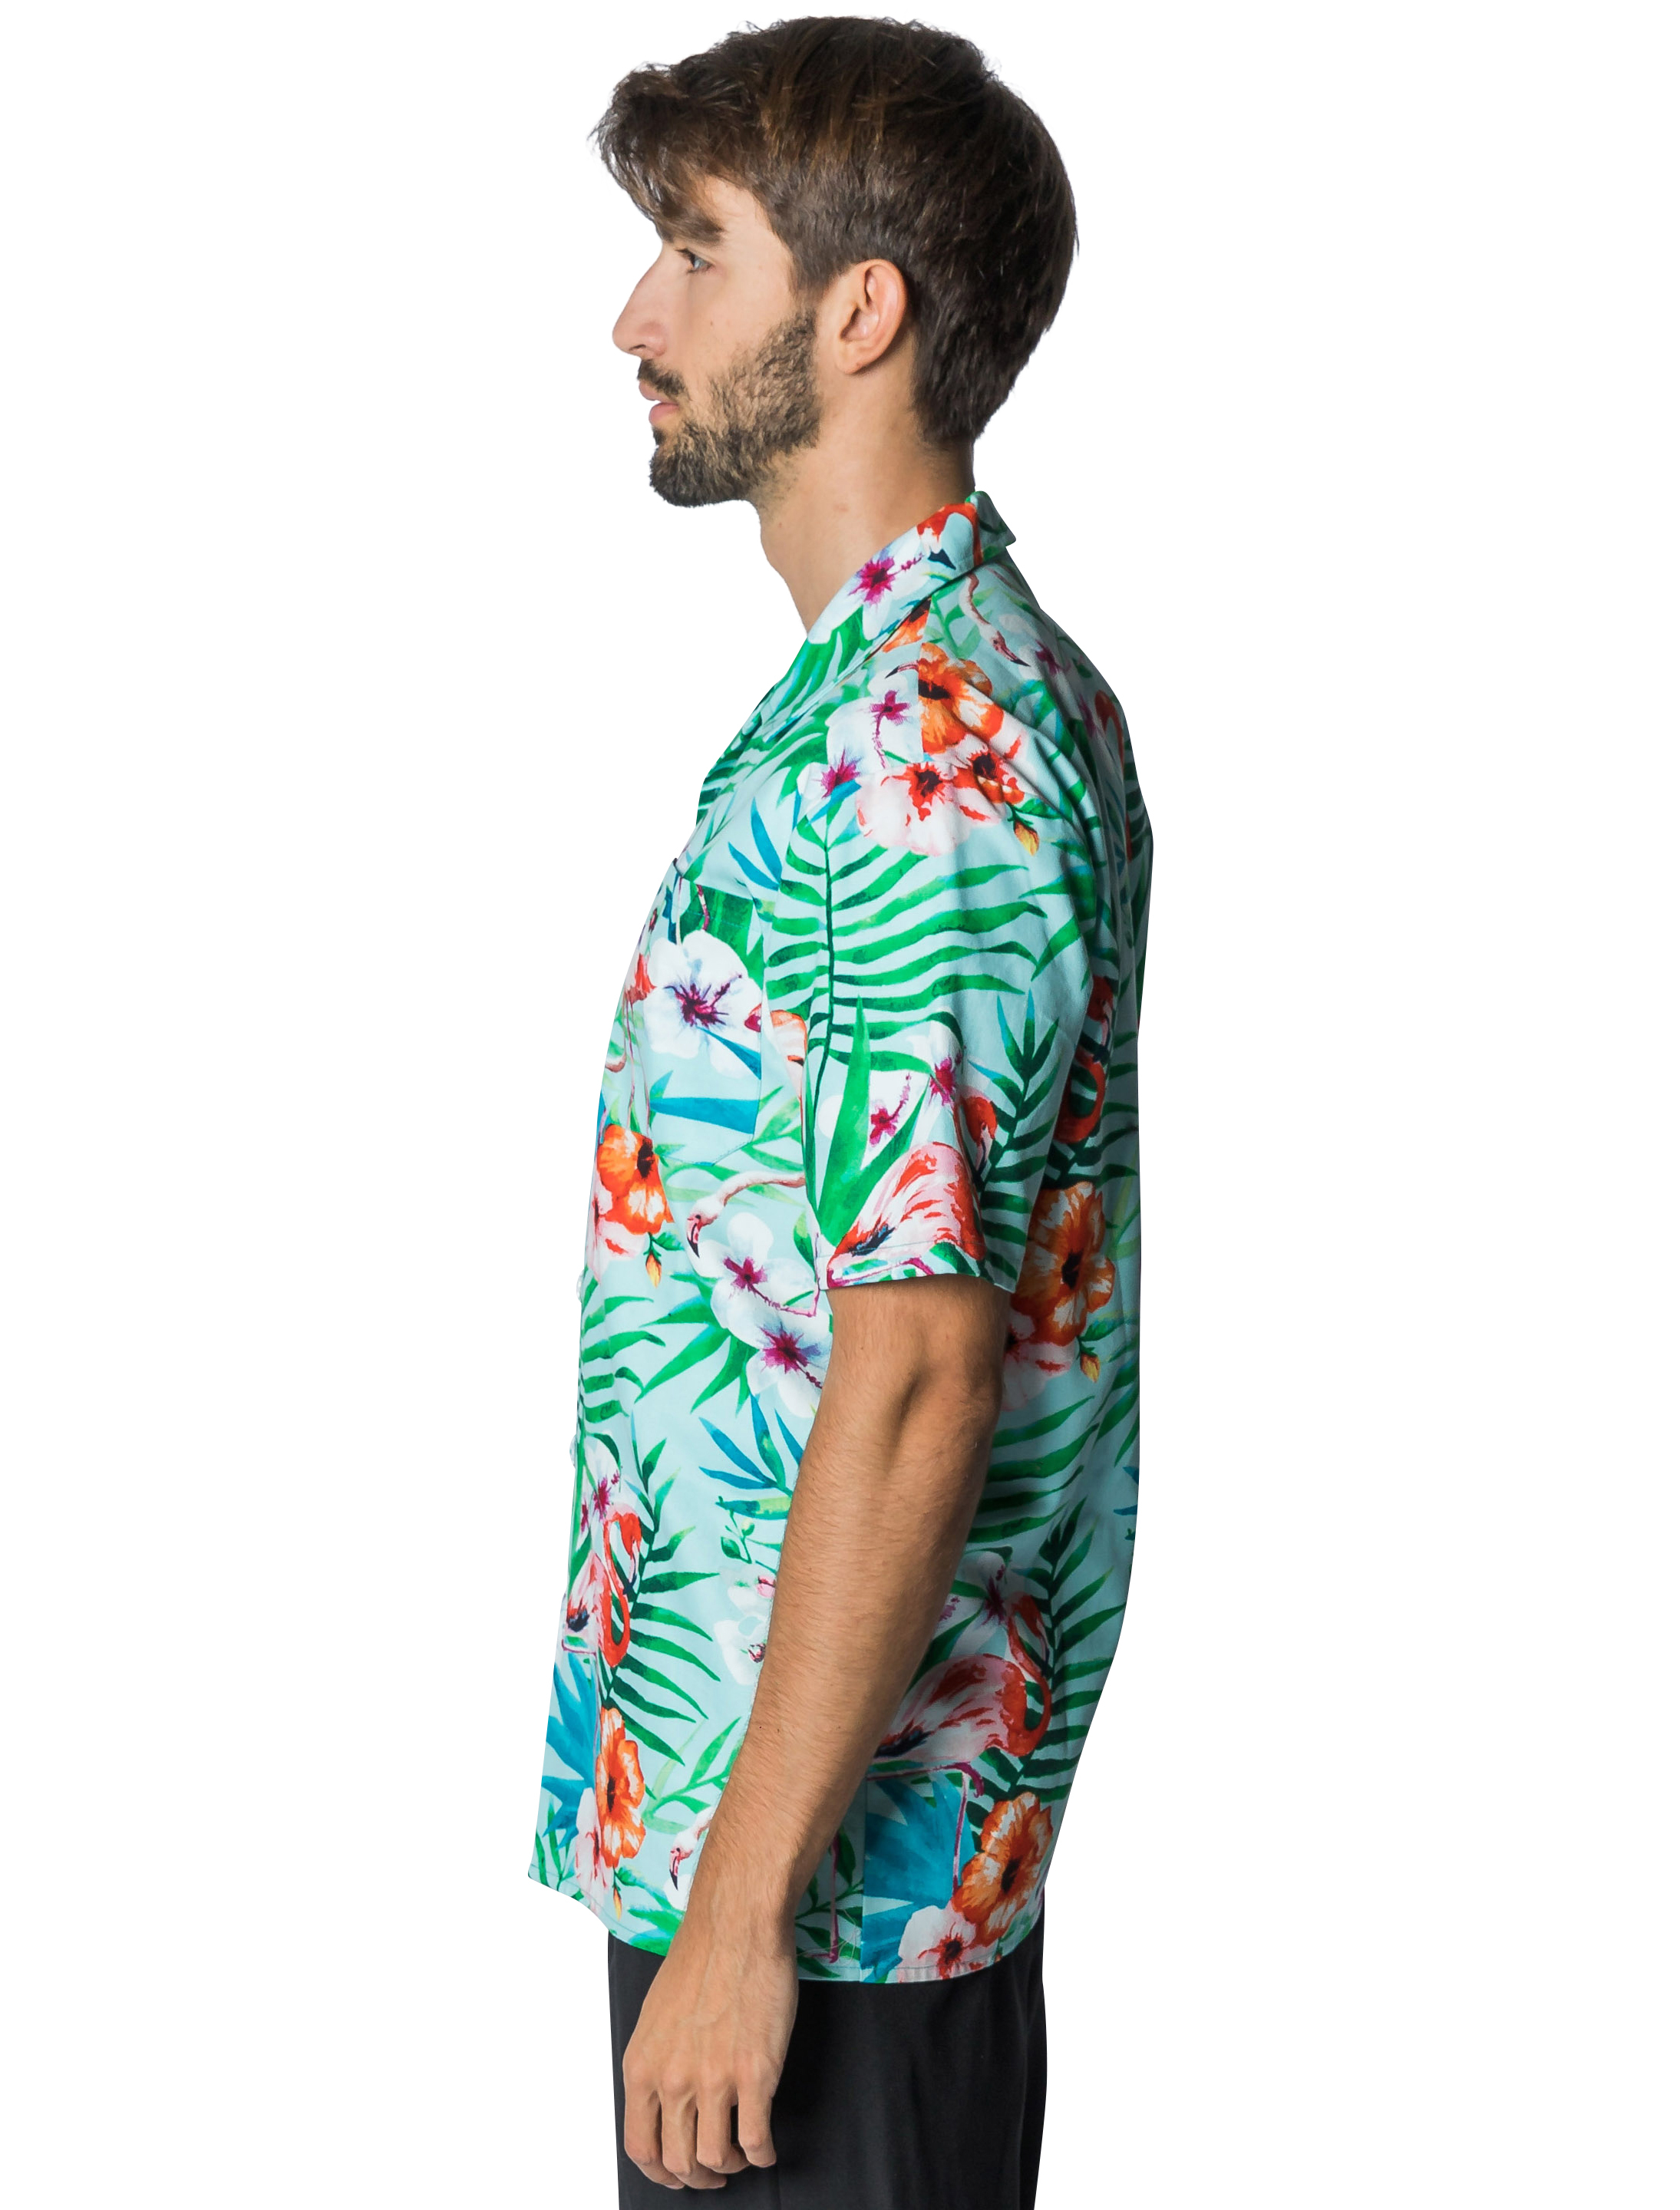 Hemd Hawaii mit Flamingos Herren grün S/M